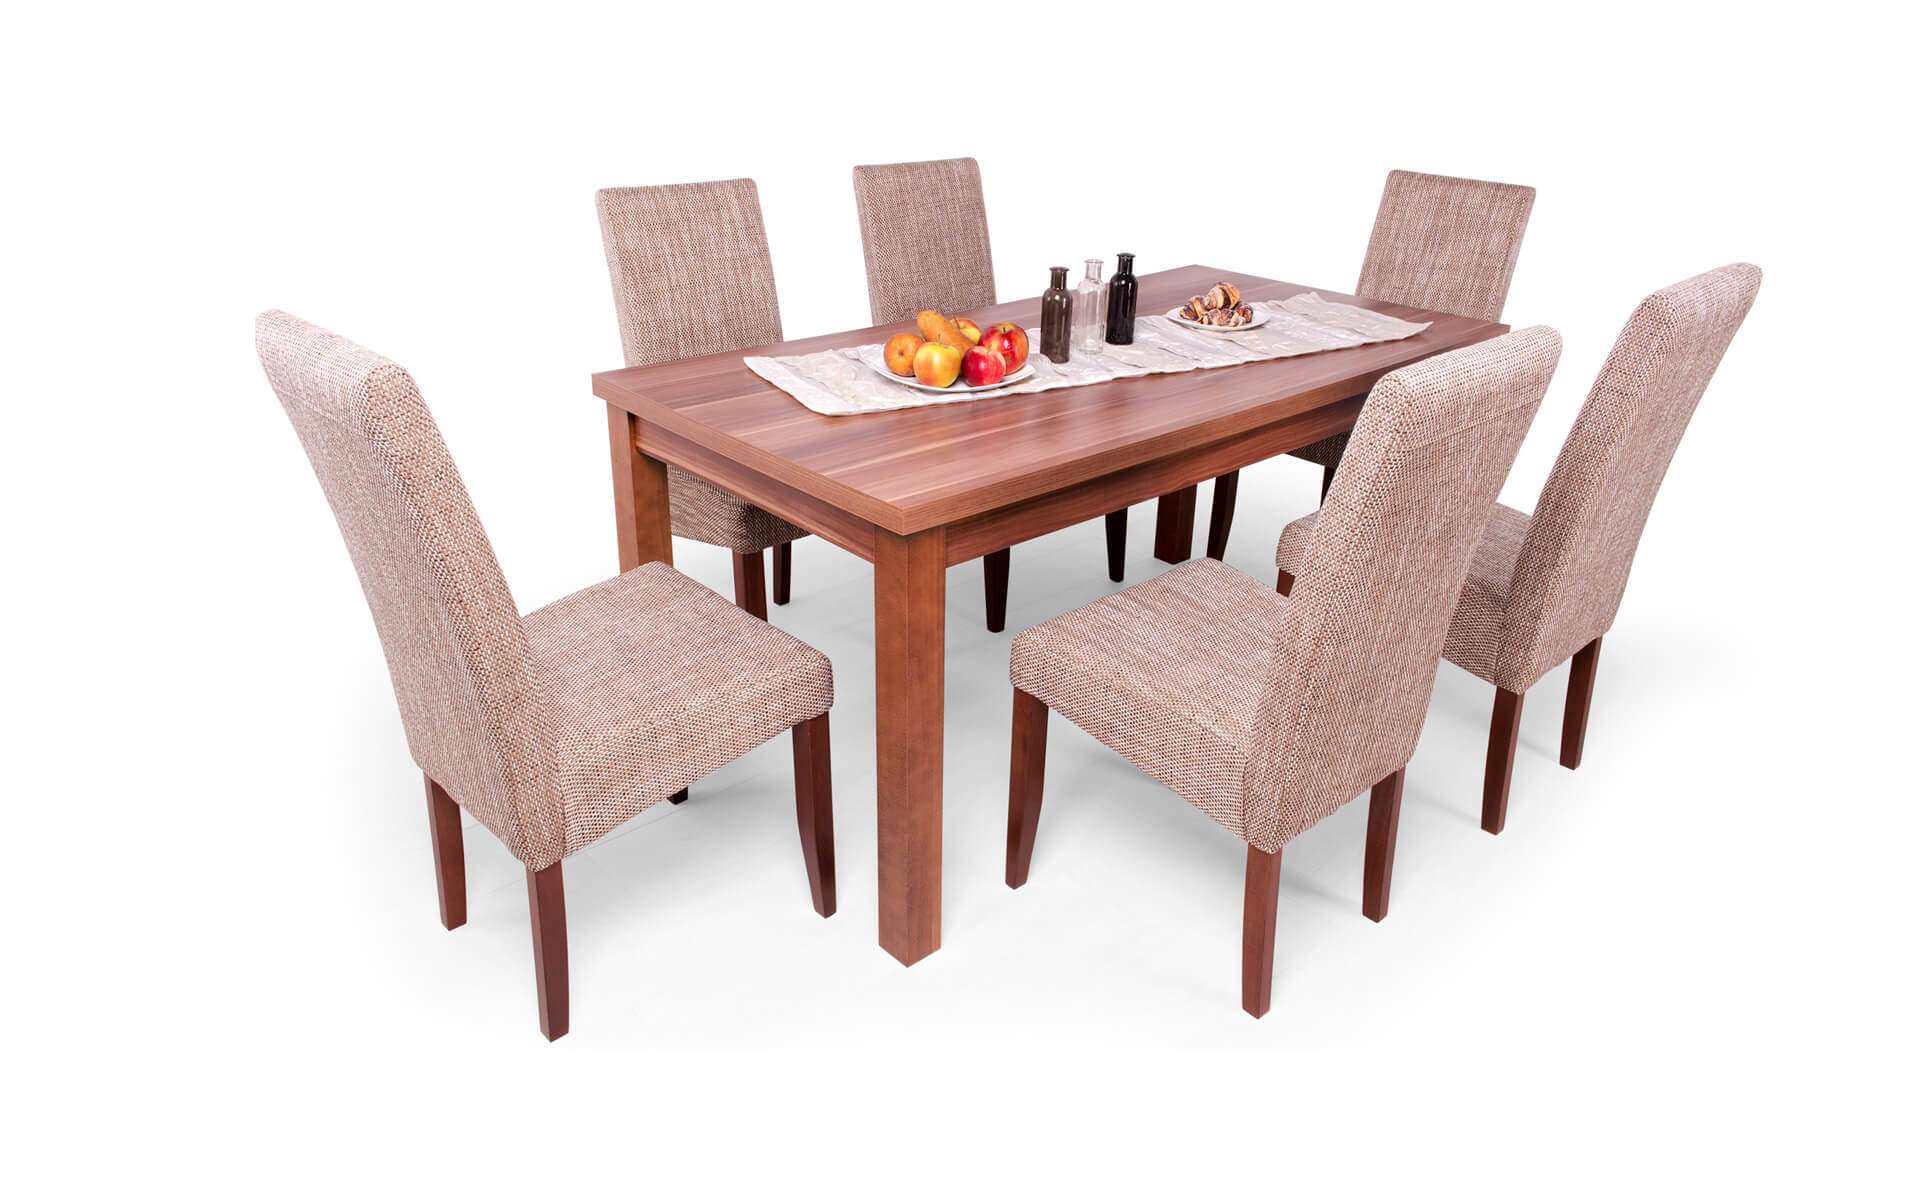 Berta asztal Berta székekkel | 6 személyes étkezőgarnitúra